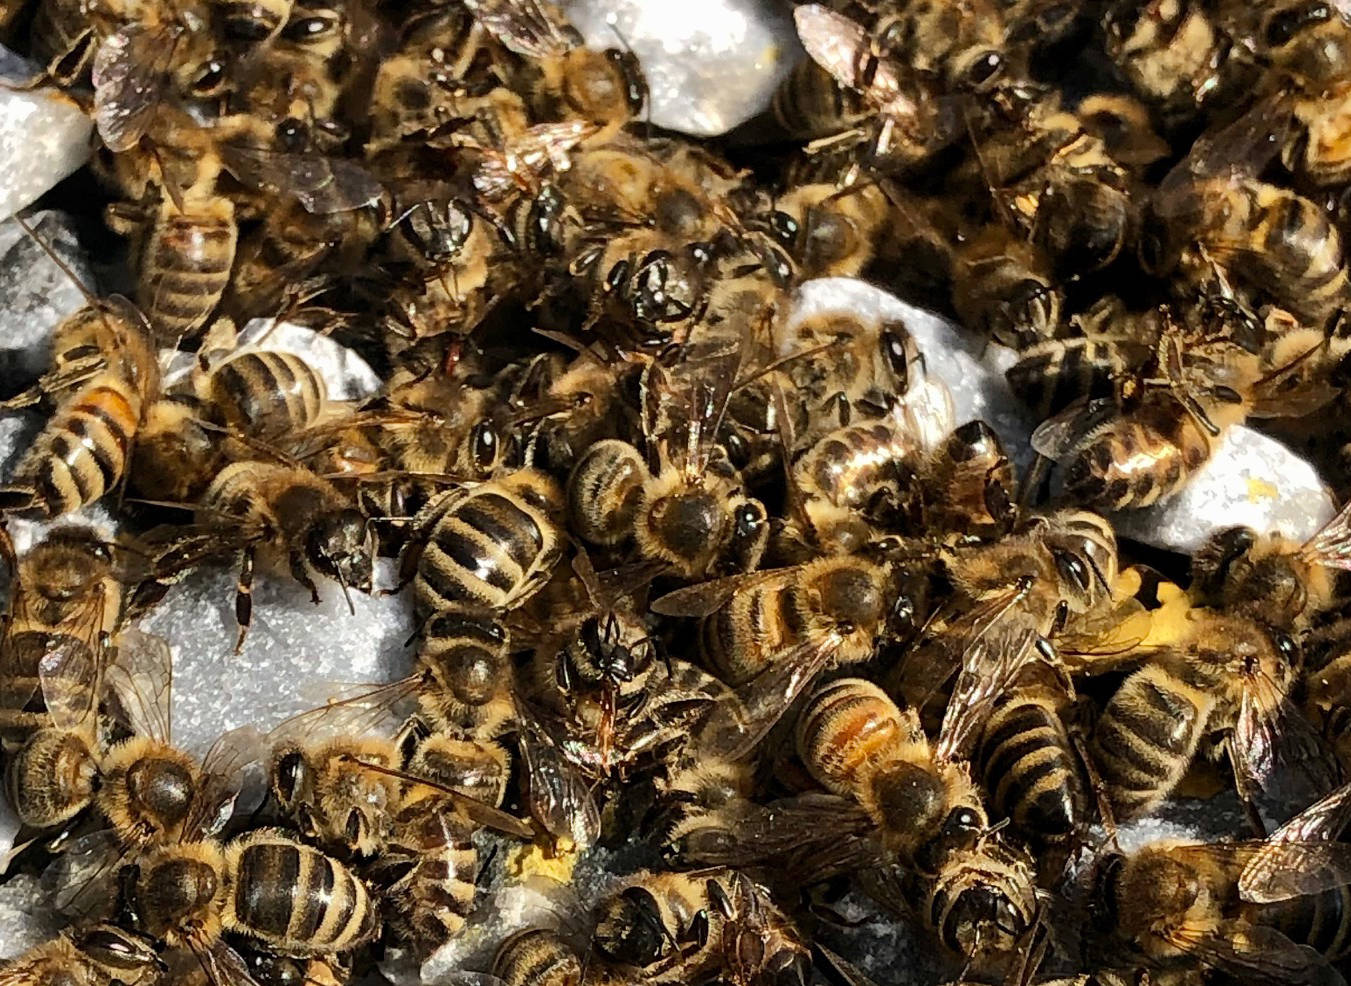 The OHearn-Stone familys dead honey bees. Photo: Darcee OHearn